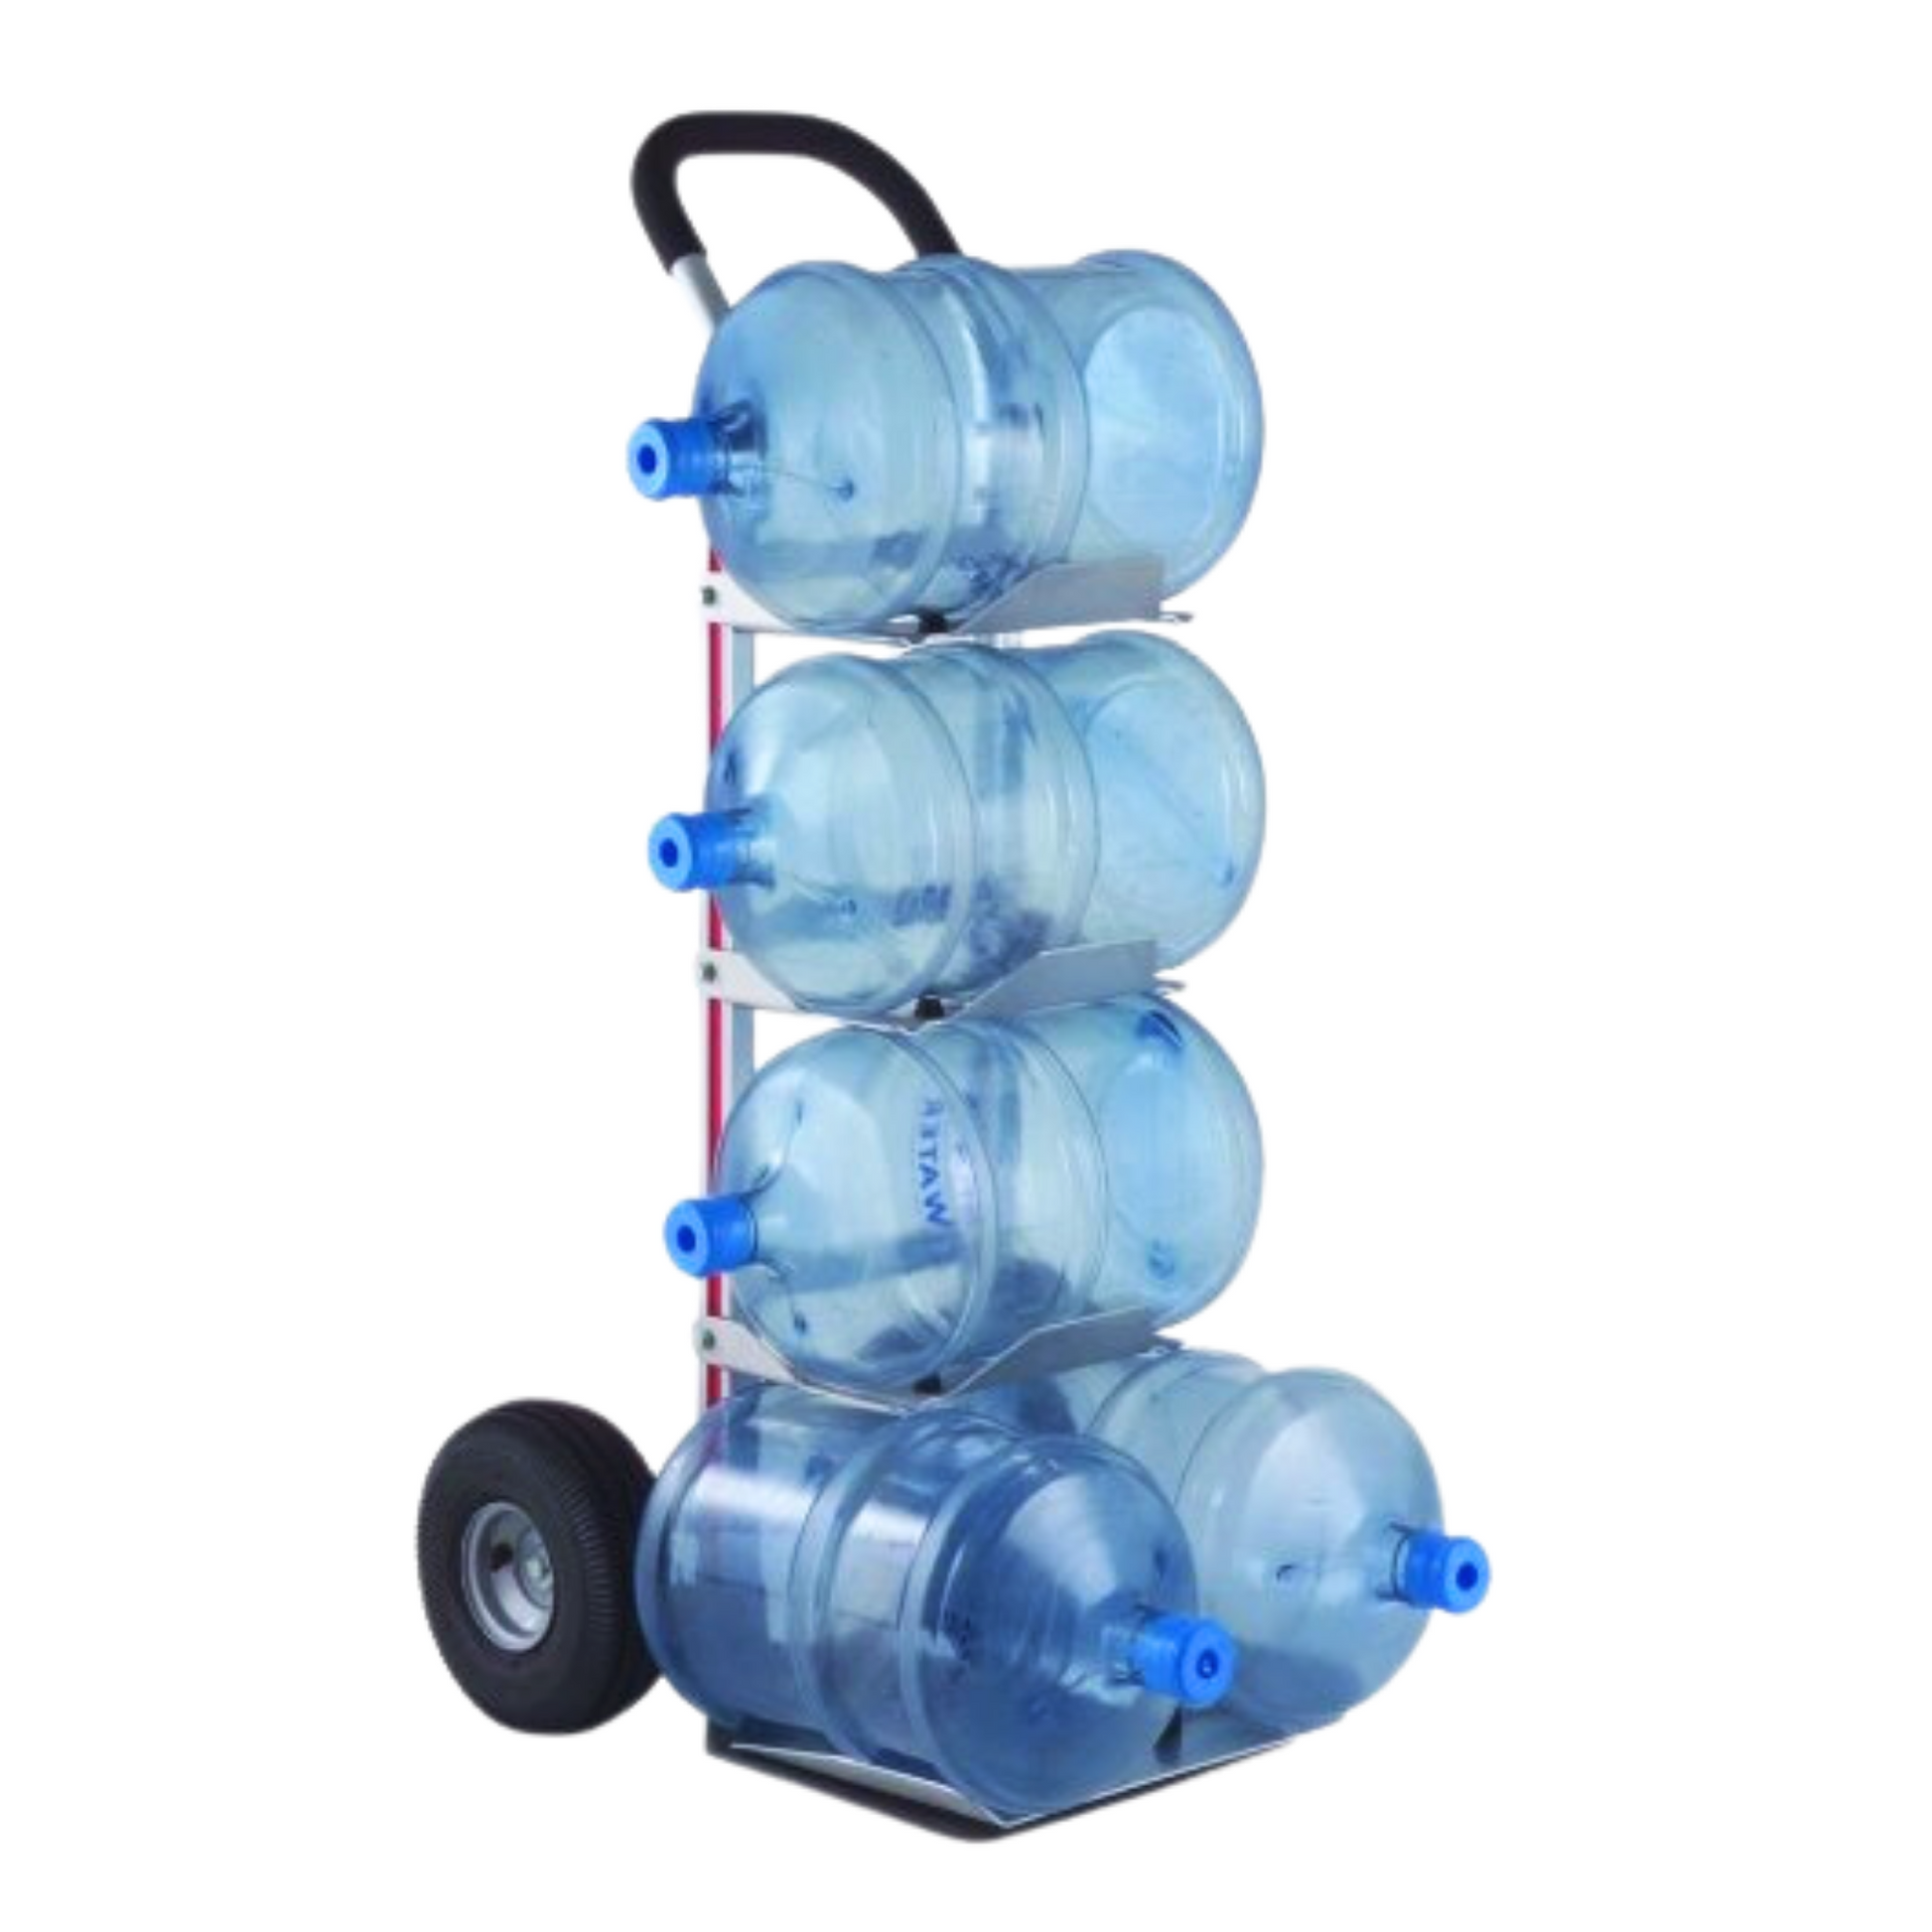 Magliner Water Bottle Cart for Convenient Water Bottle Transportation